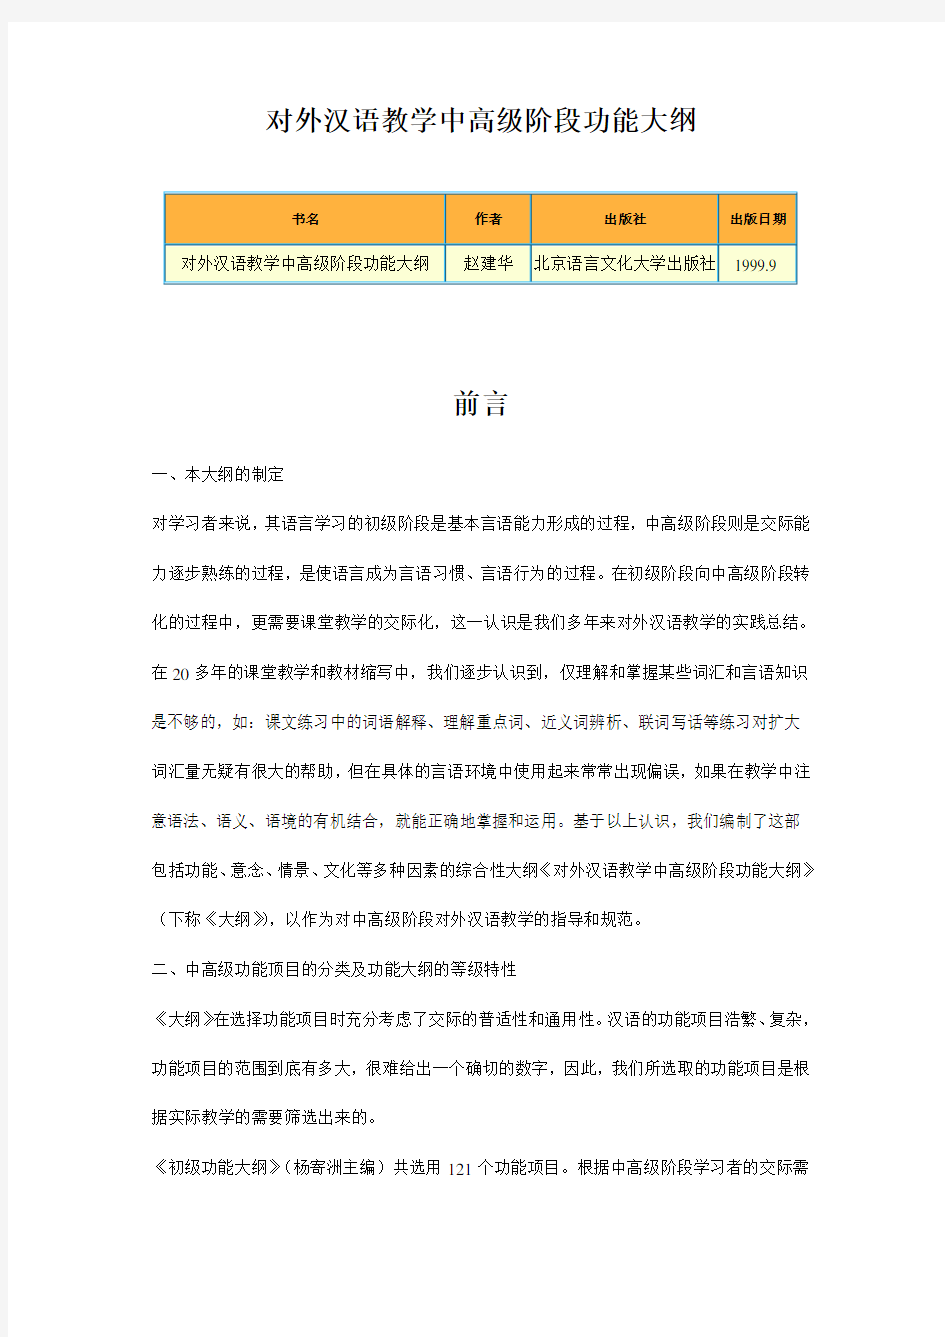 (完整版)对外汉语教学中高级阶段功能大纲